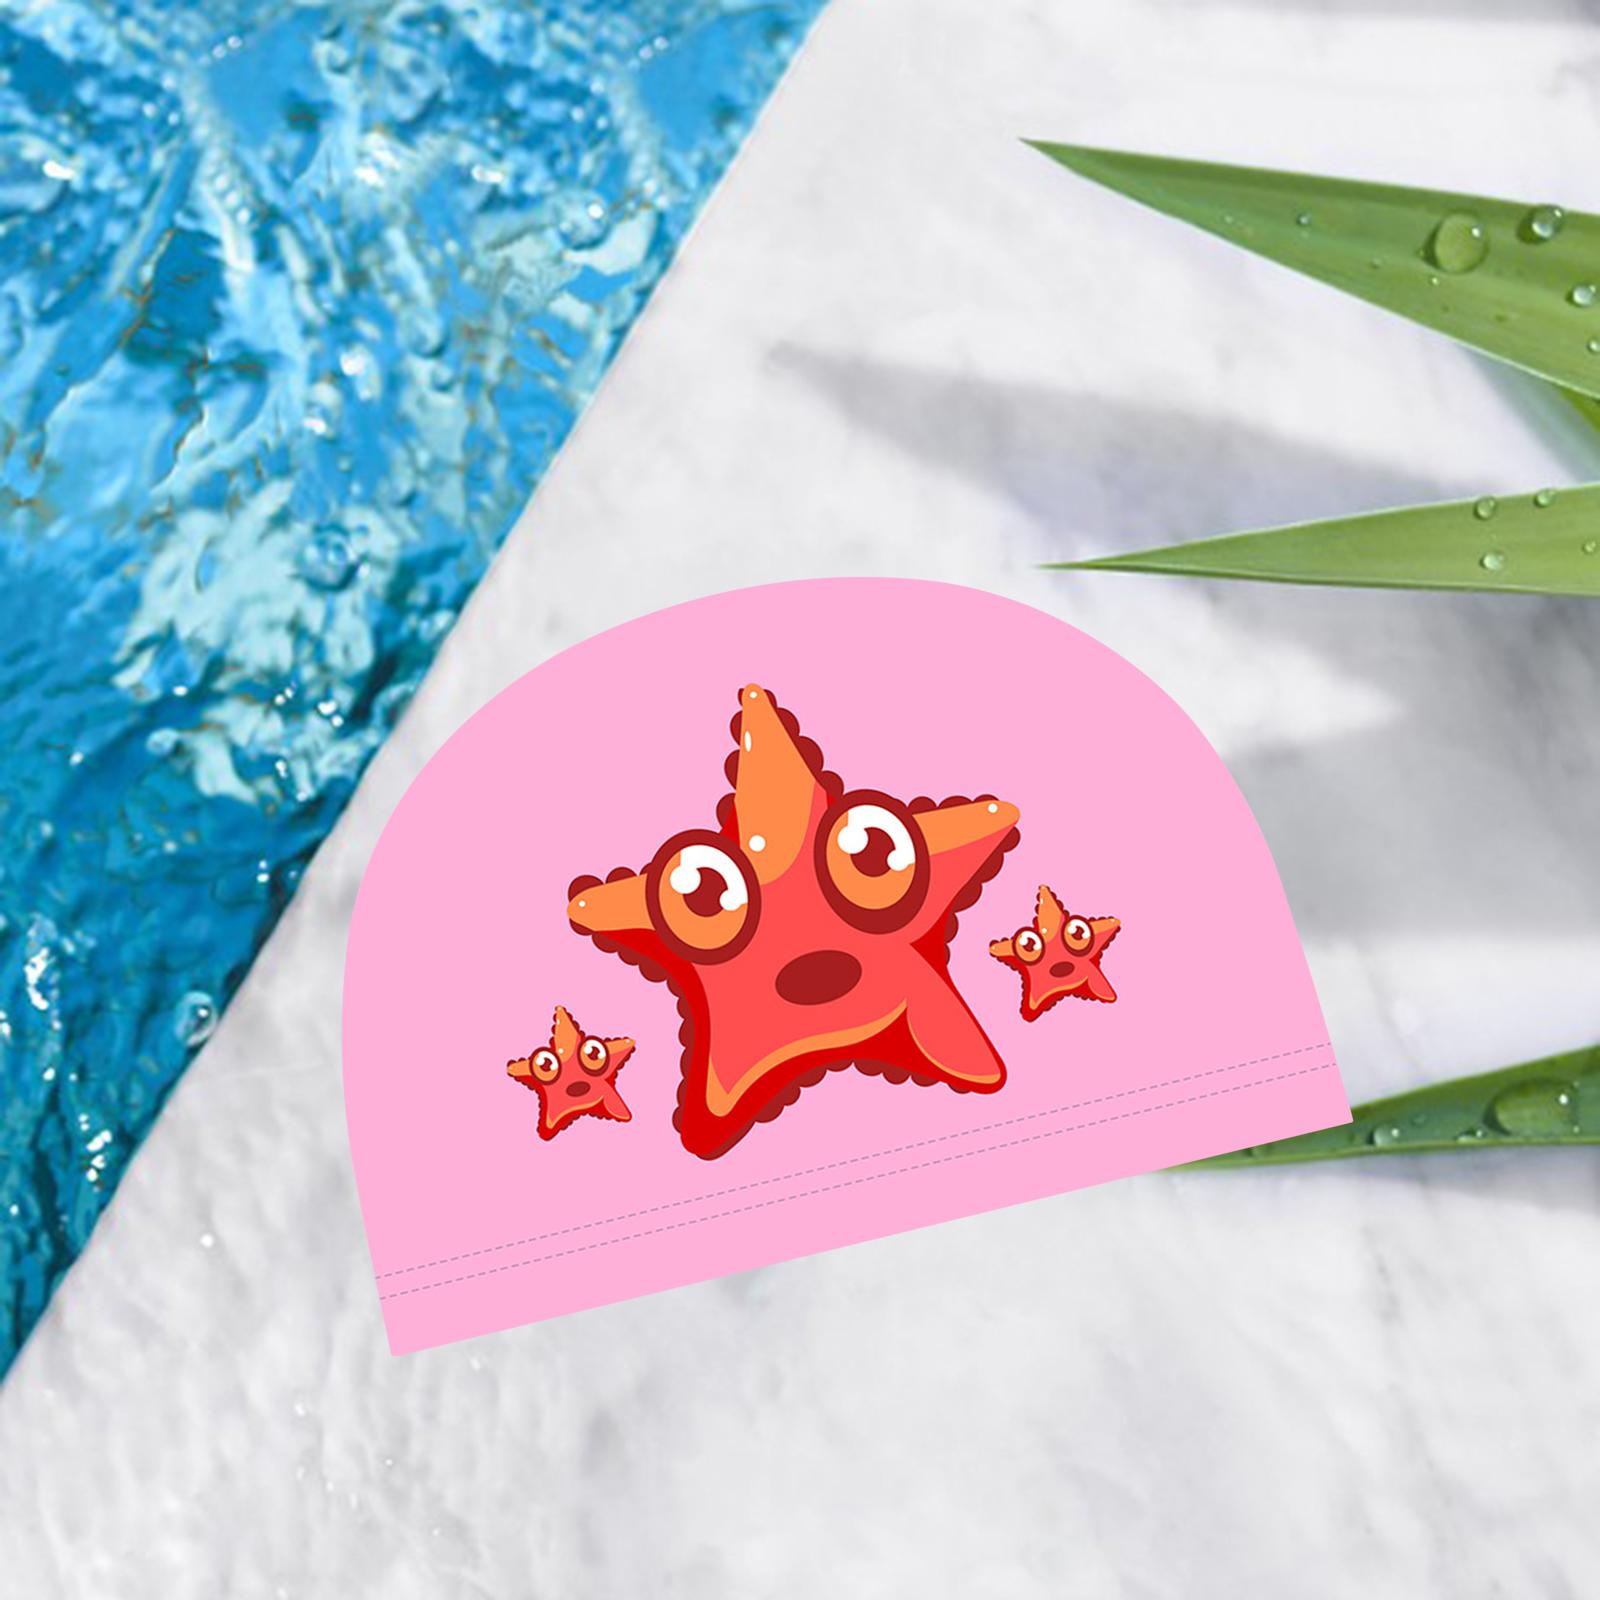 Swim Cap Kids Bathing Swimming Hat Girl Boy Animal Print Cap Pink Starfish